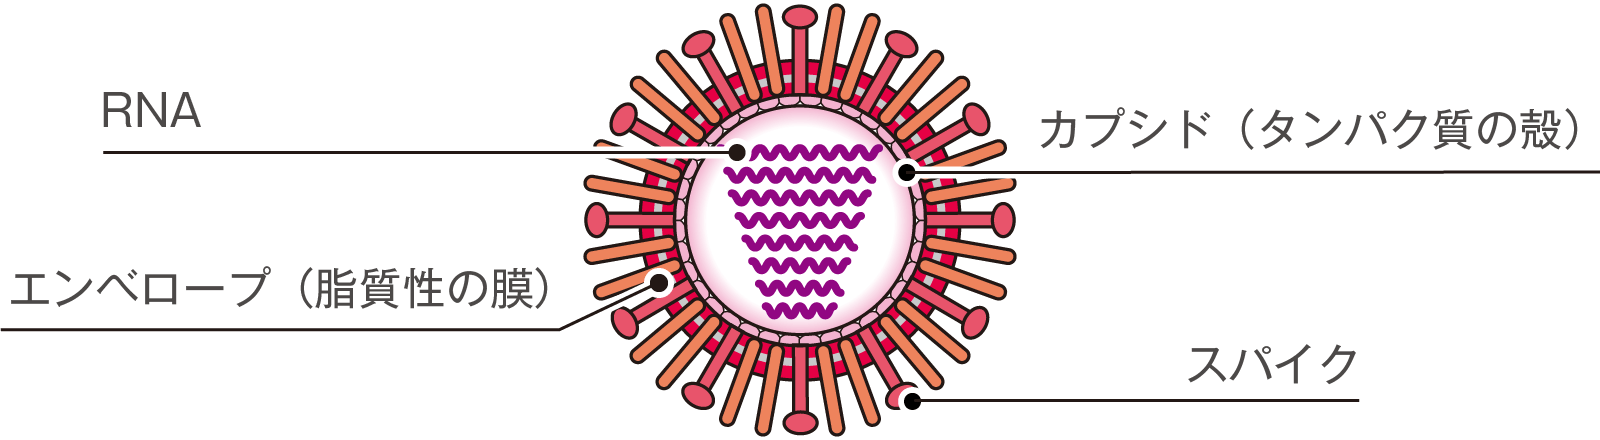 新型コロナウイルスは「免疫細胞を無効化する」という研究結果の画像 3/4